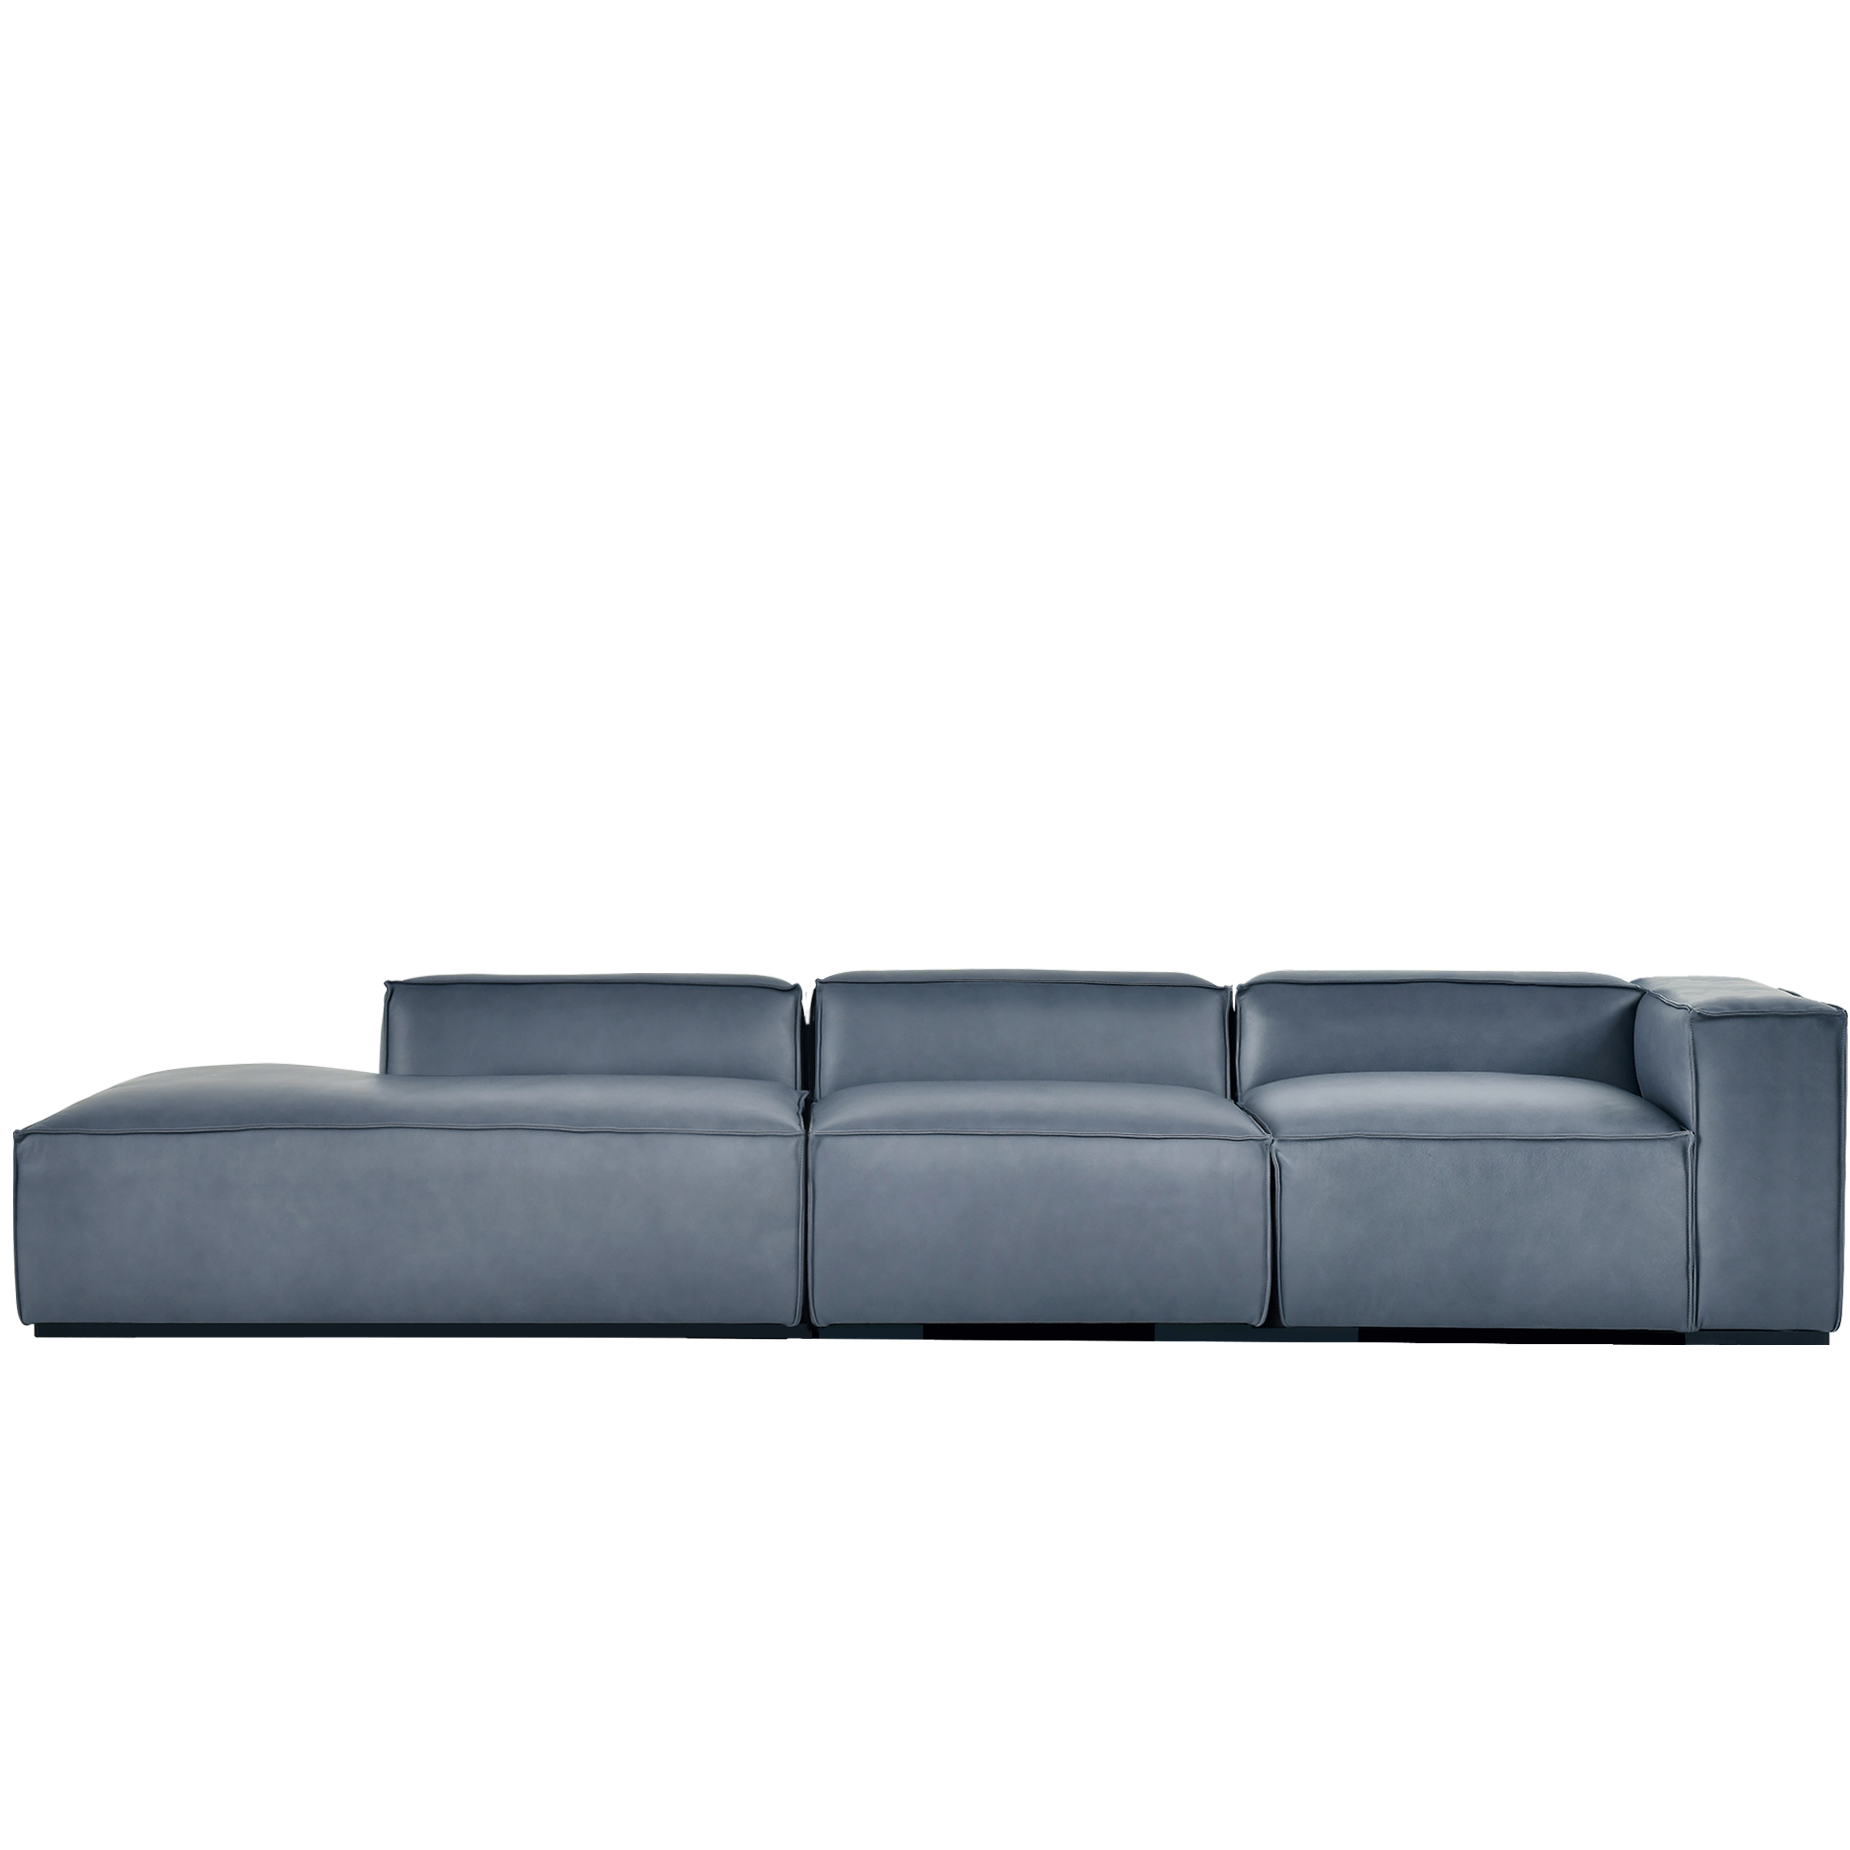 (주)도이치 DOICH ®    PEN16 modular couch sofa 도이치 펜16  4인 카우치 모듈소파  [4주 주문제작]